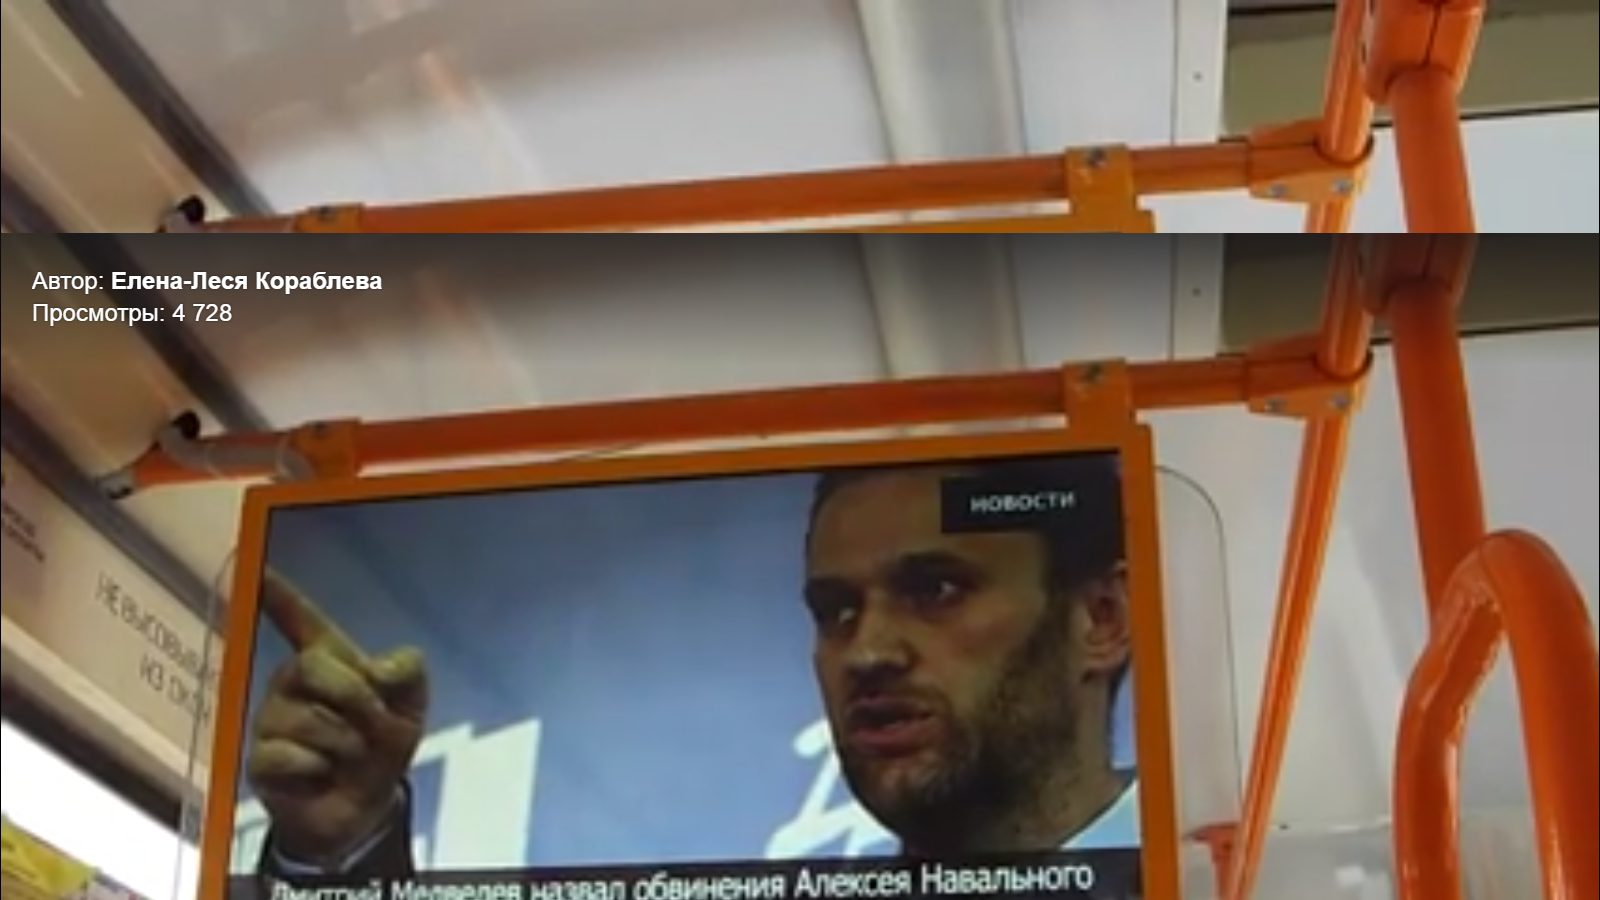 Трамвайное депо в Екатеринбурге занялось политикой